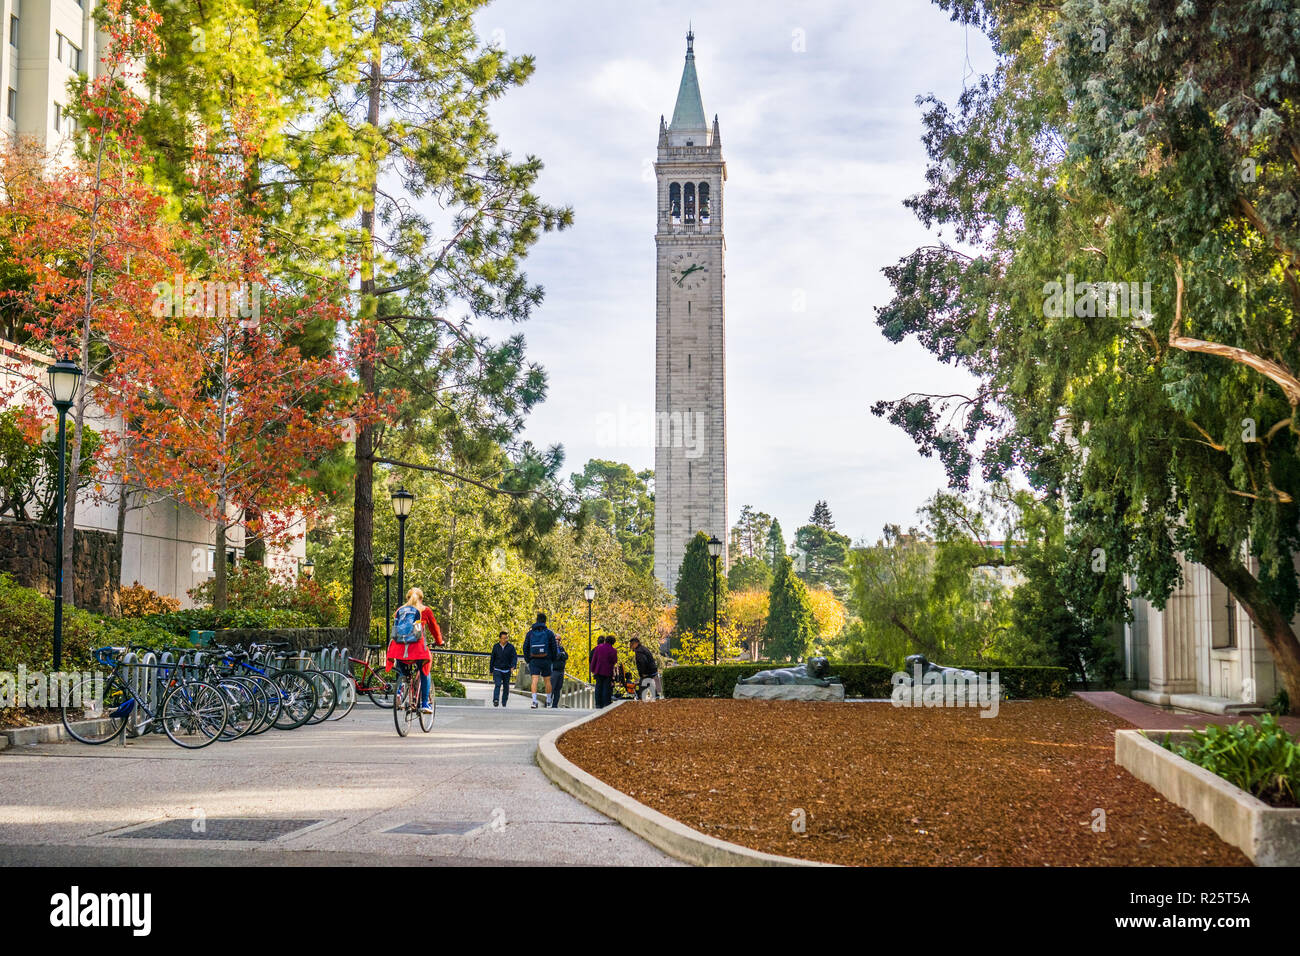 November 19, 2017 Berkeley/CA/USA - Studenten und Besucher zu Fuß durch die Campus an einem sonnigen Herbsttag; Sather Tower (Campanile) im backgroun Stockfoto